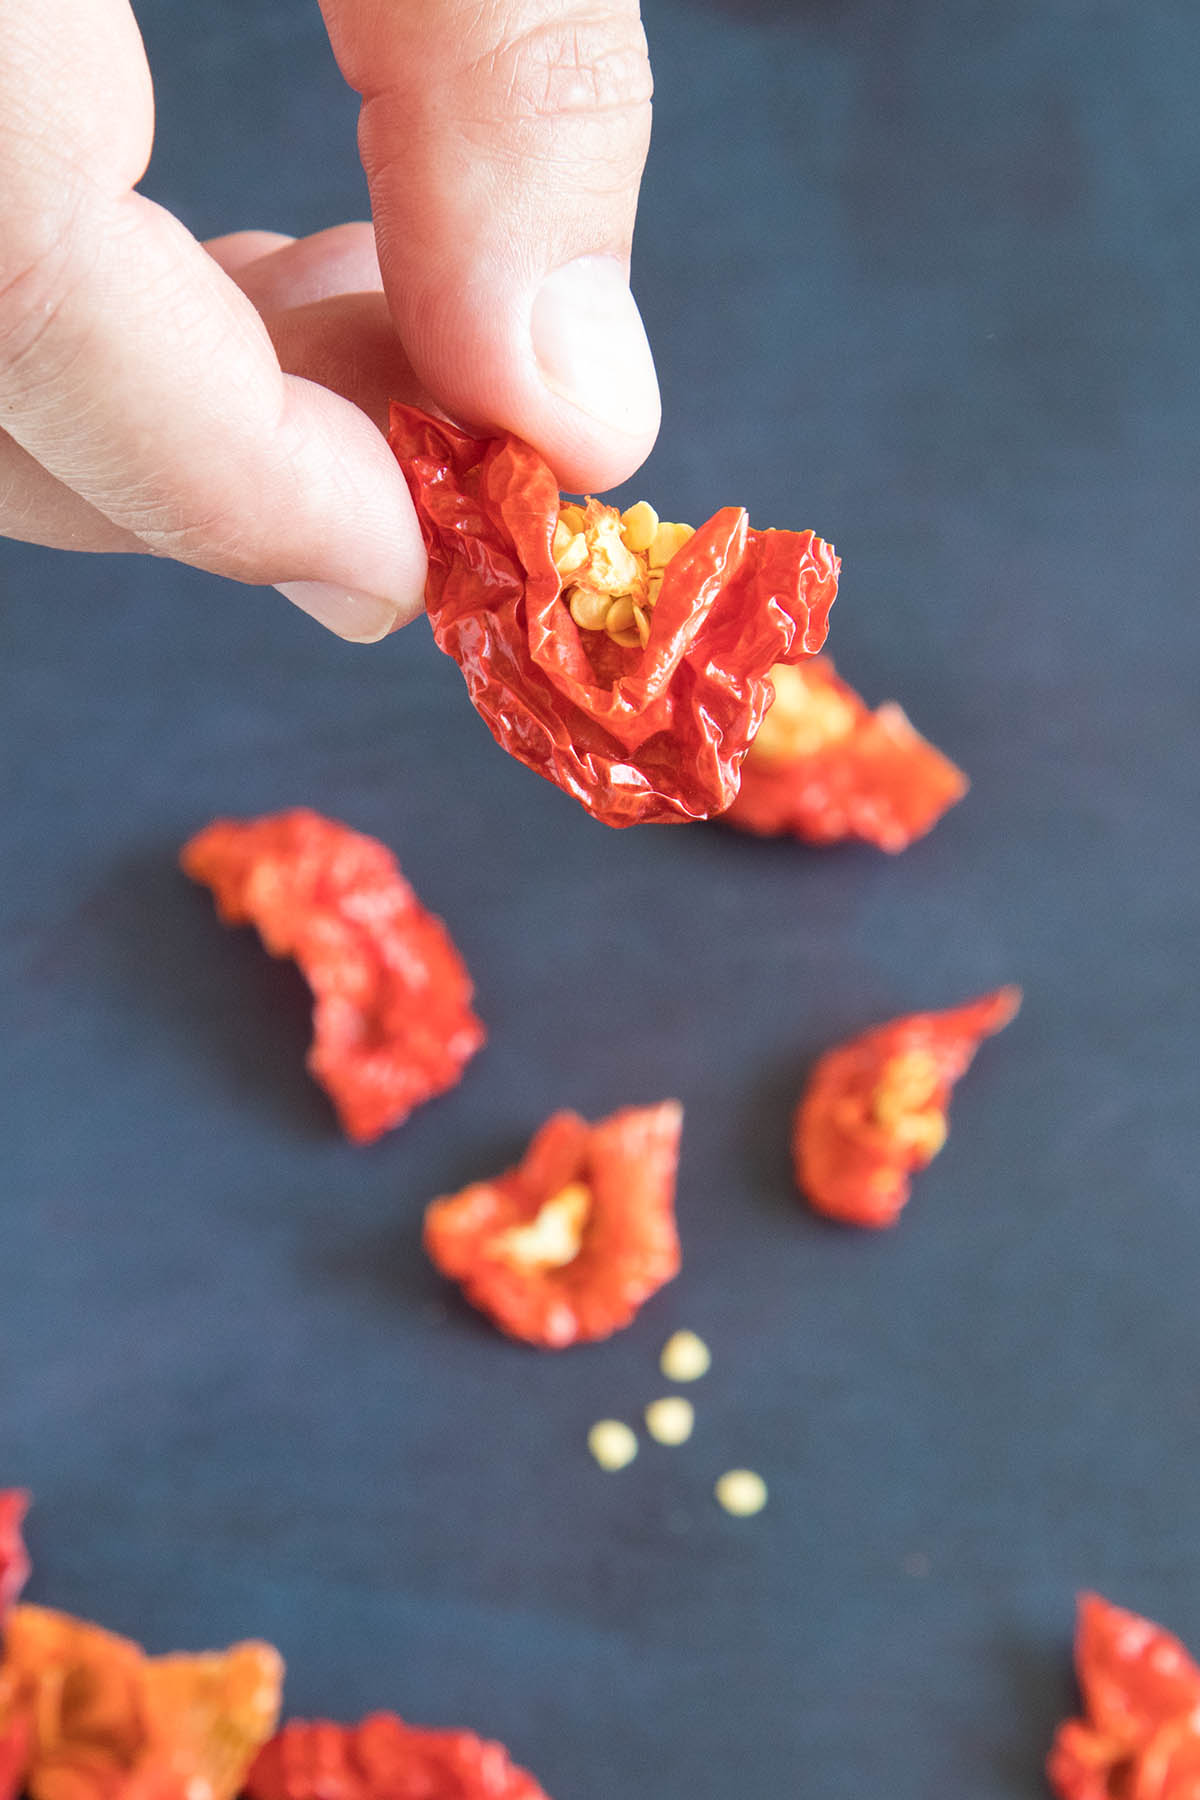 How to Make Homemade Chili Flakes – Recipe